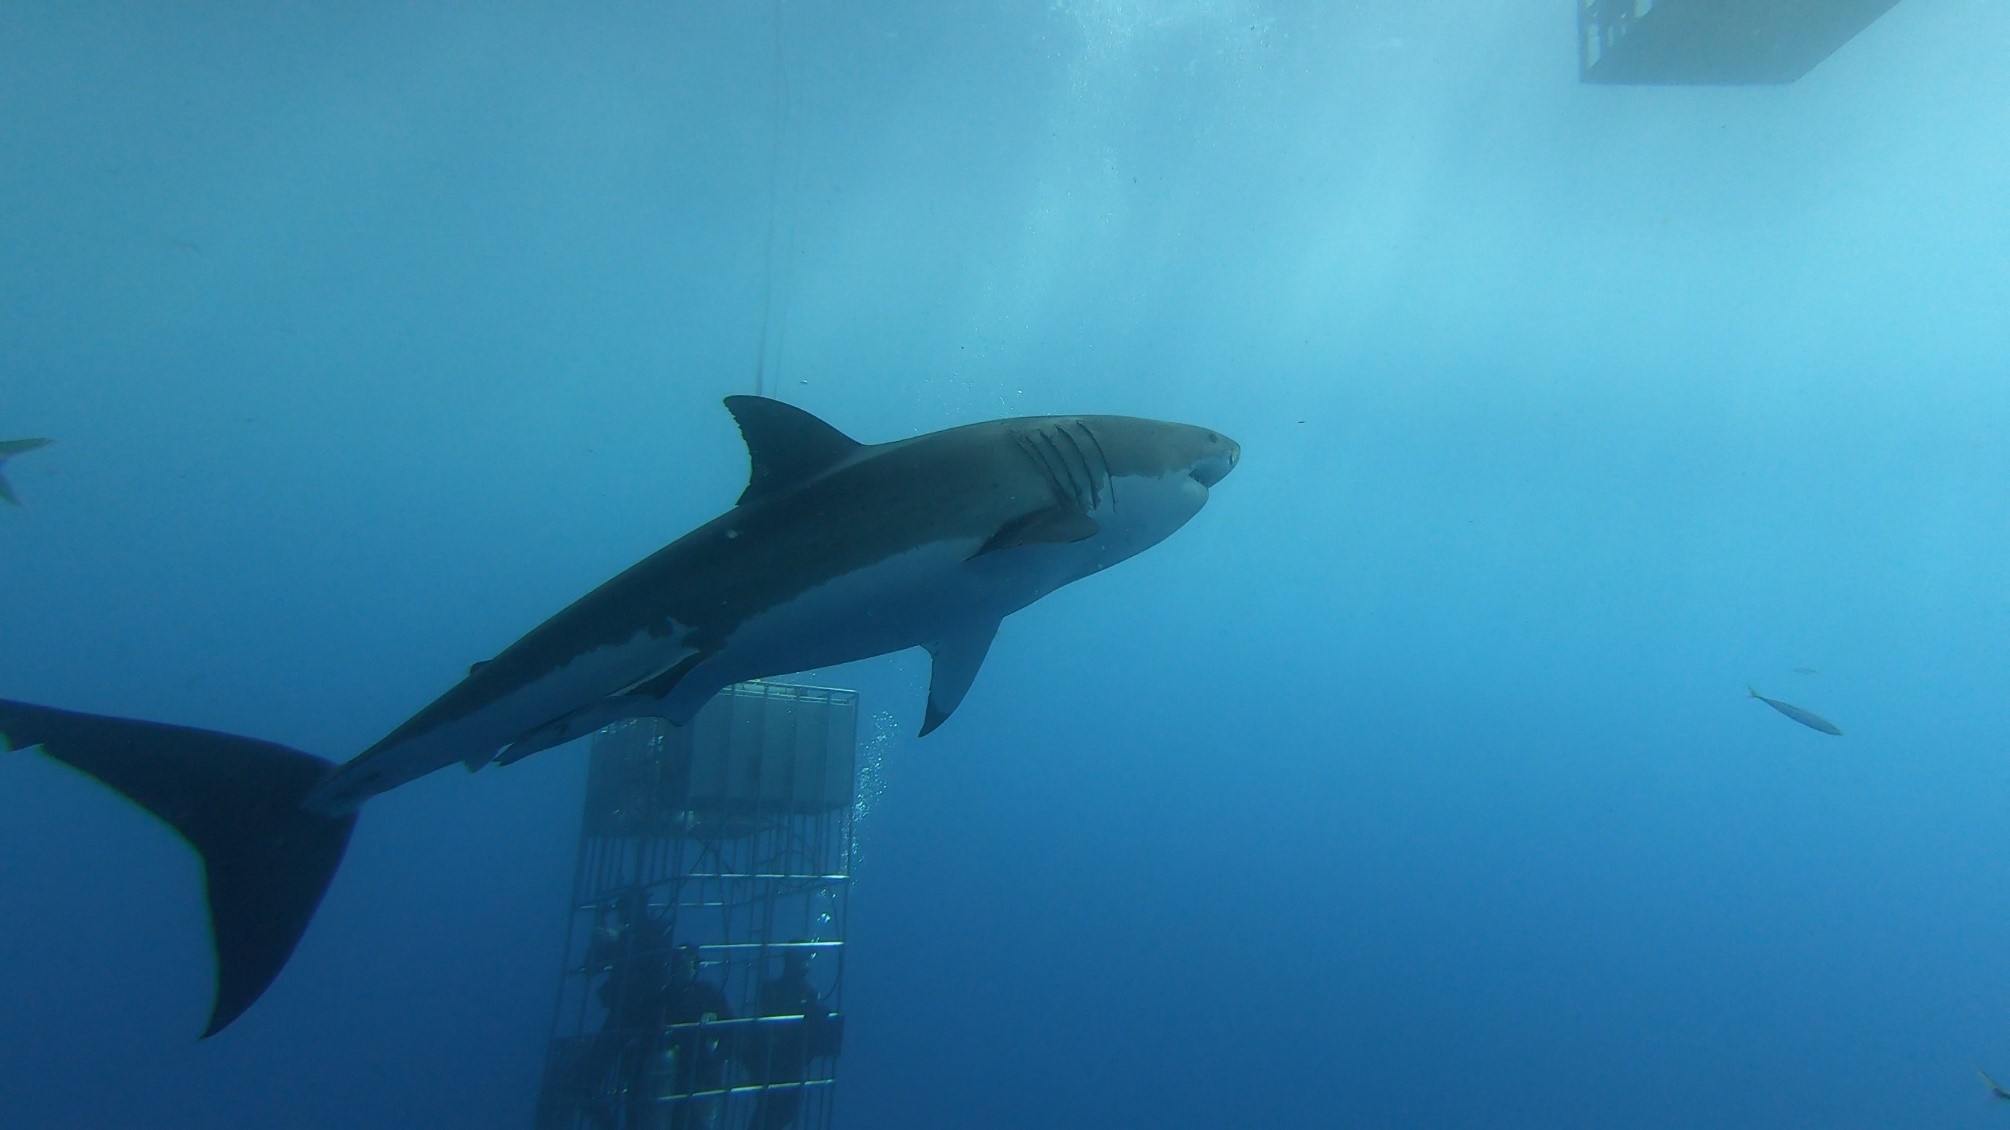 Figura 2. Costado derecho del tiburón identificado como Stouffer. Fotografía tomada el 23 de septiembre del 2019.